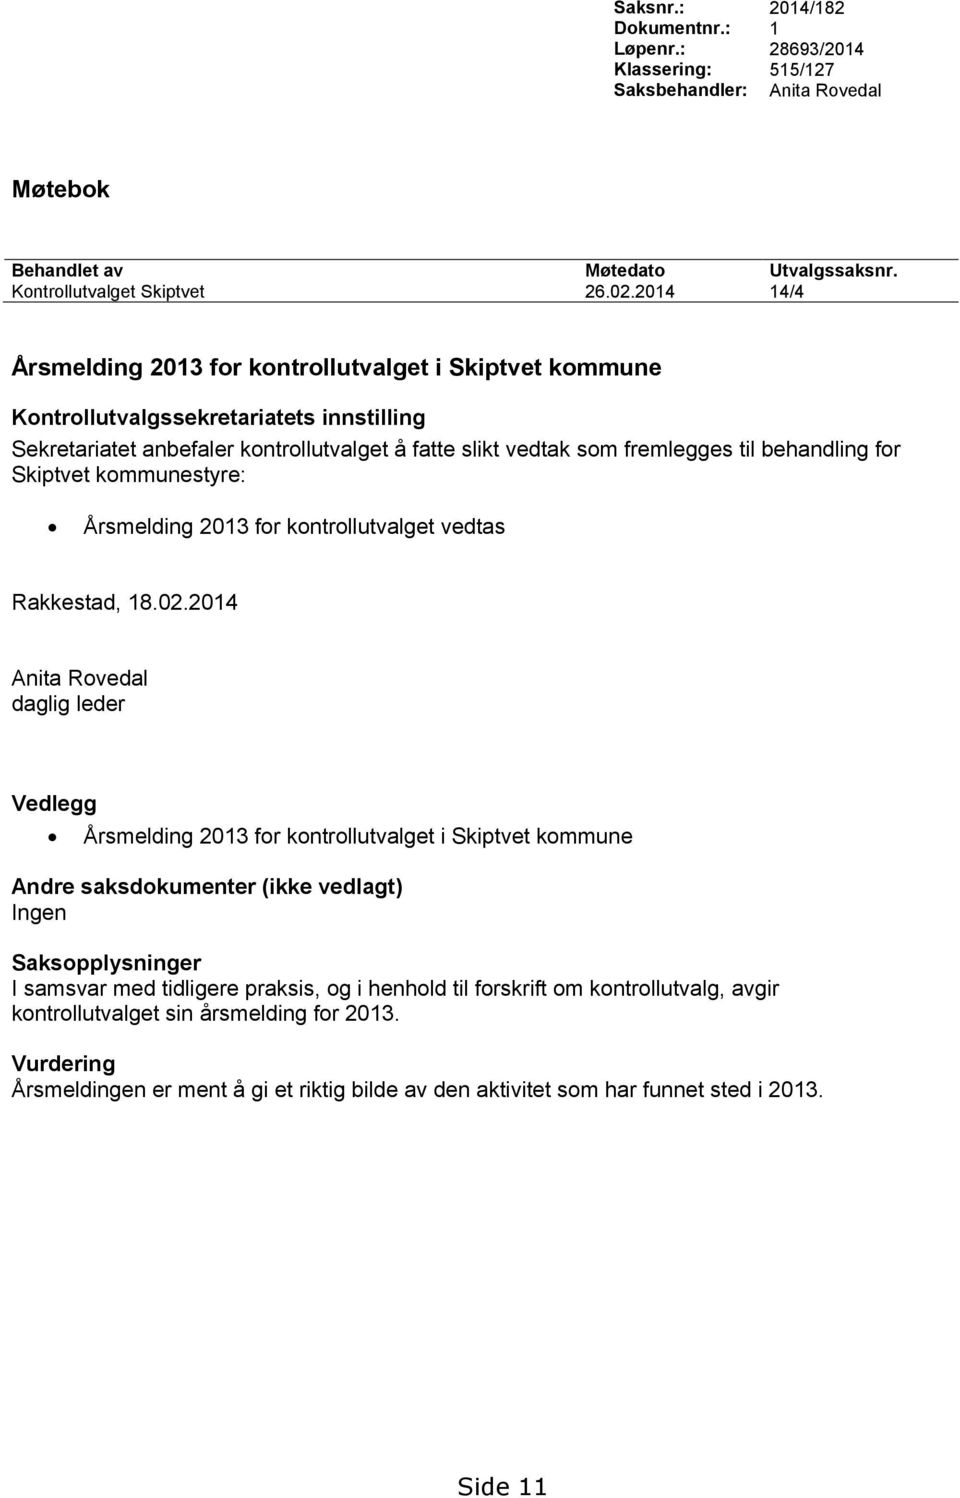 Årsmelding 2013 for kontrollutvalget vedtas Rakkestad, 18.02.